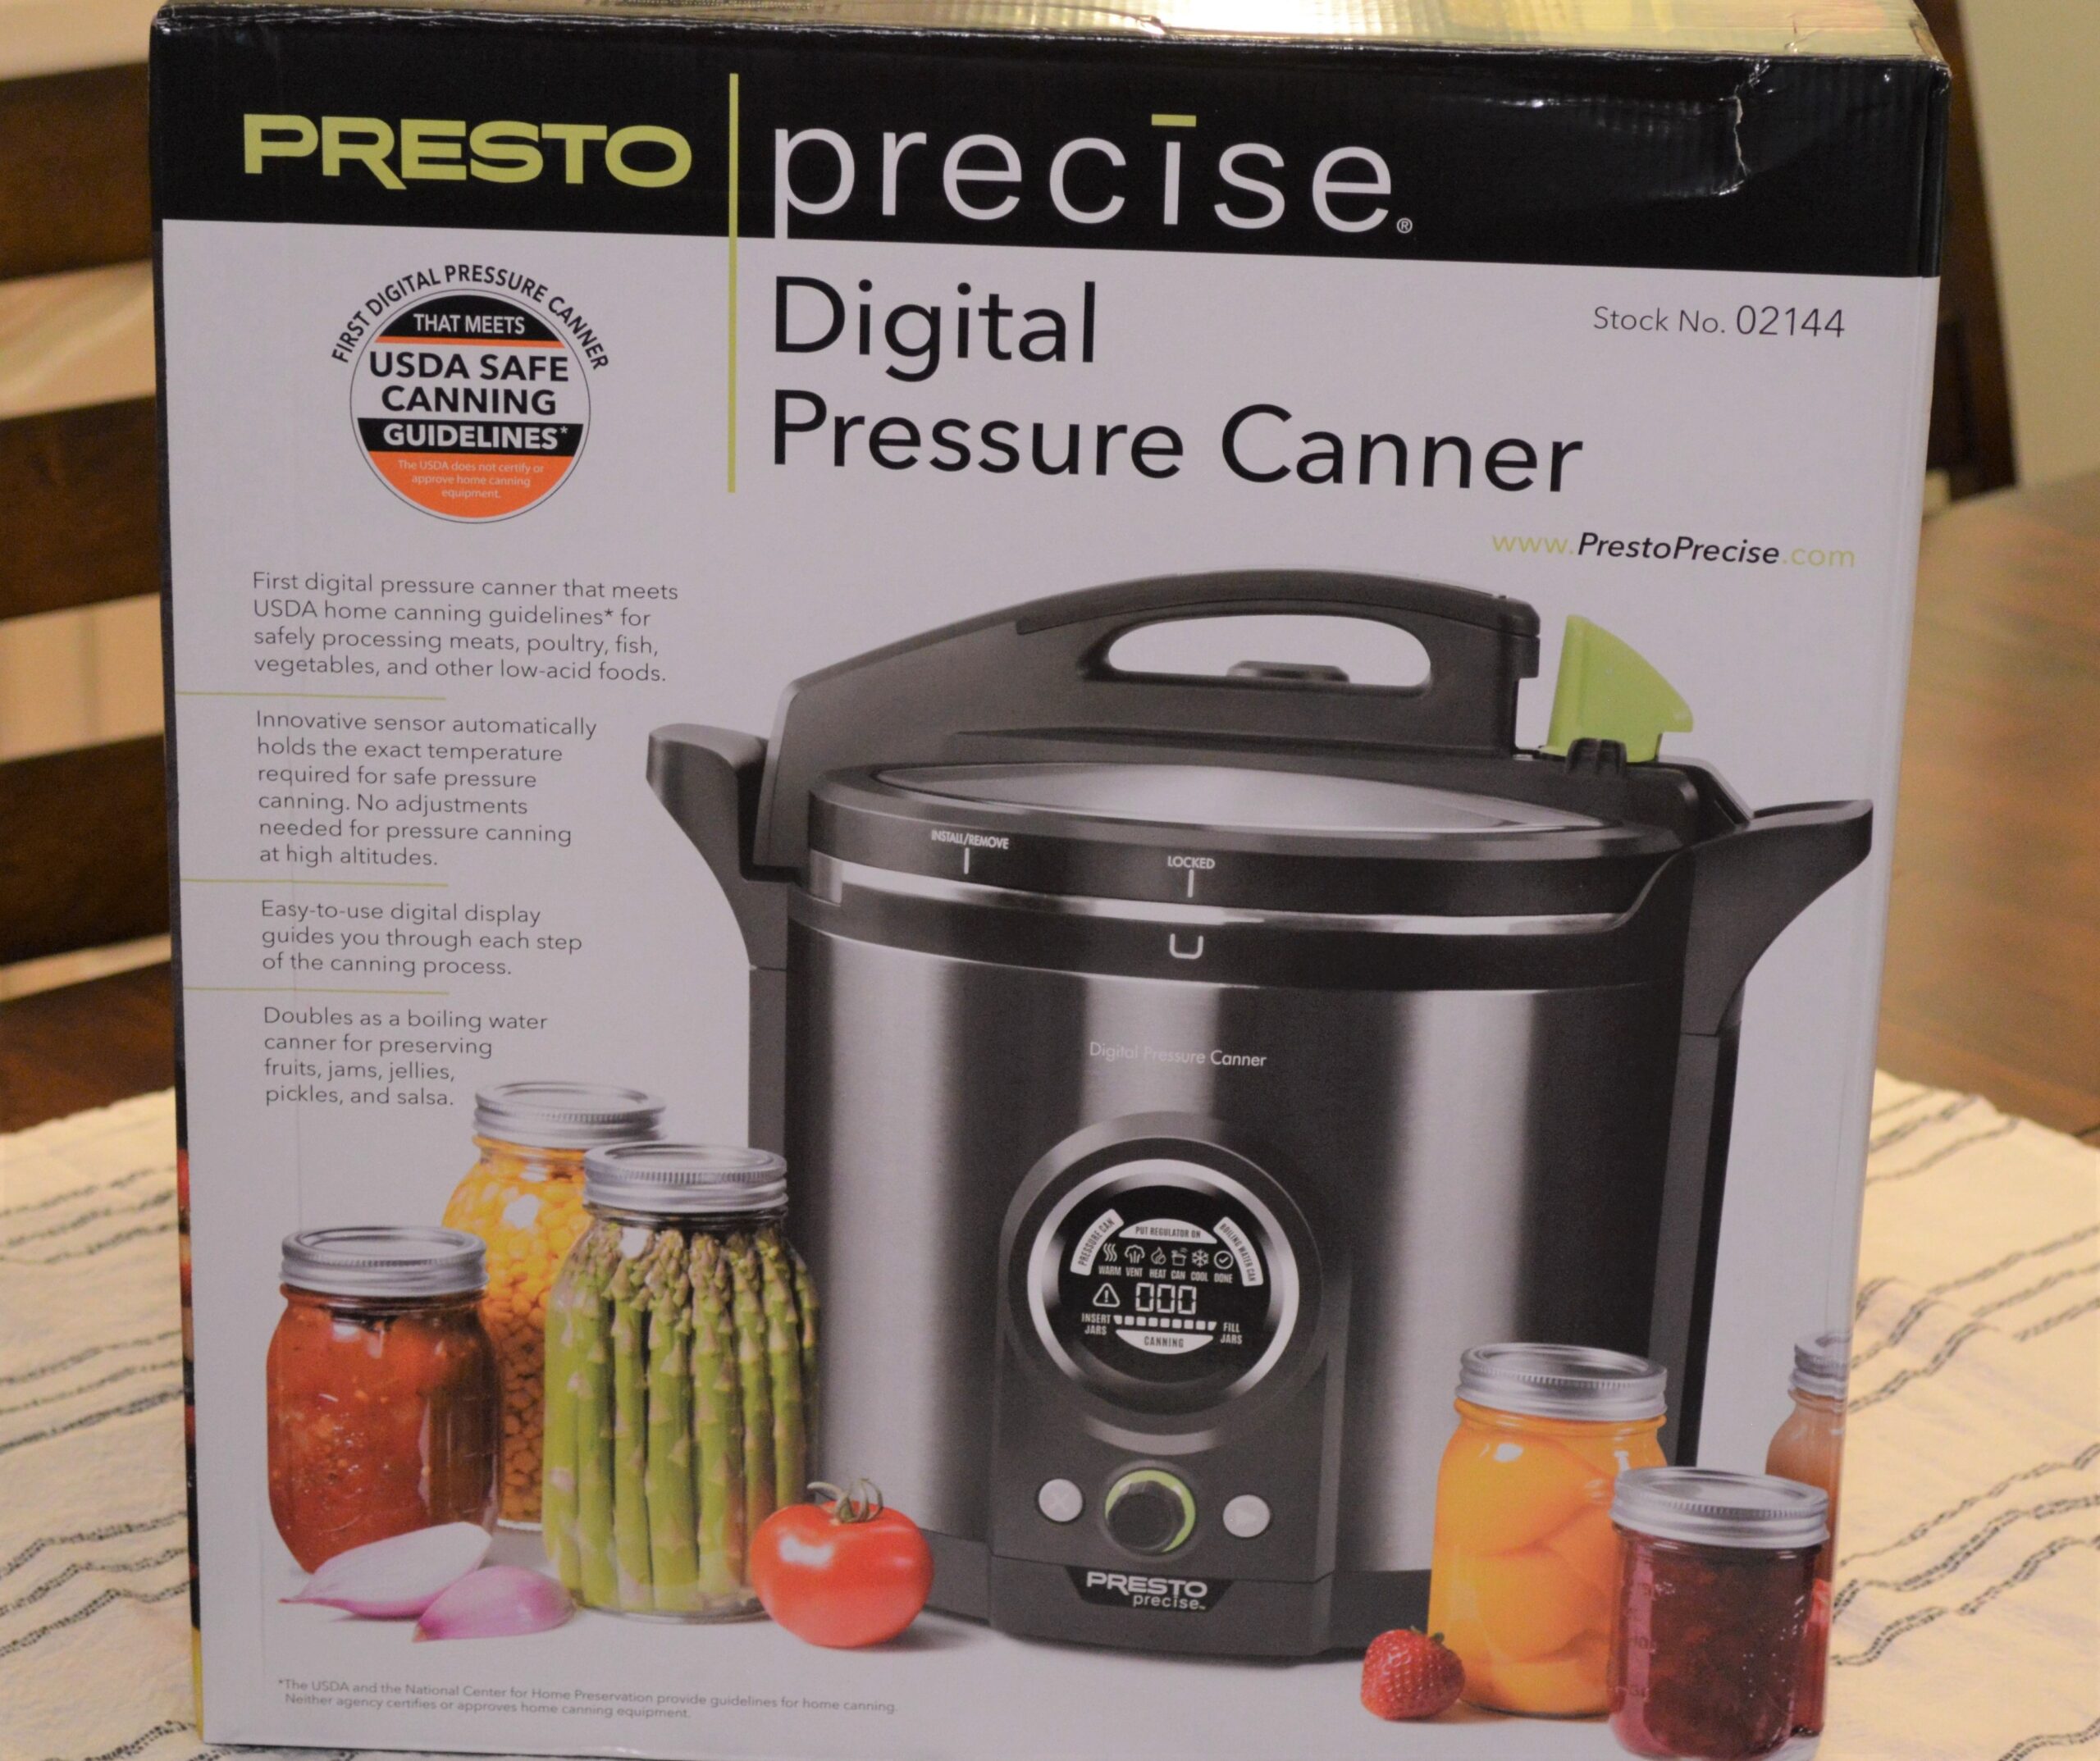 Presto Digital Pressure Canner in the Box